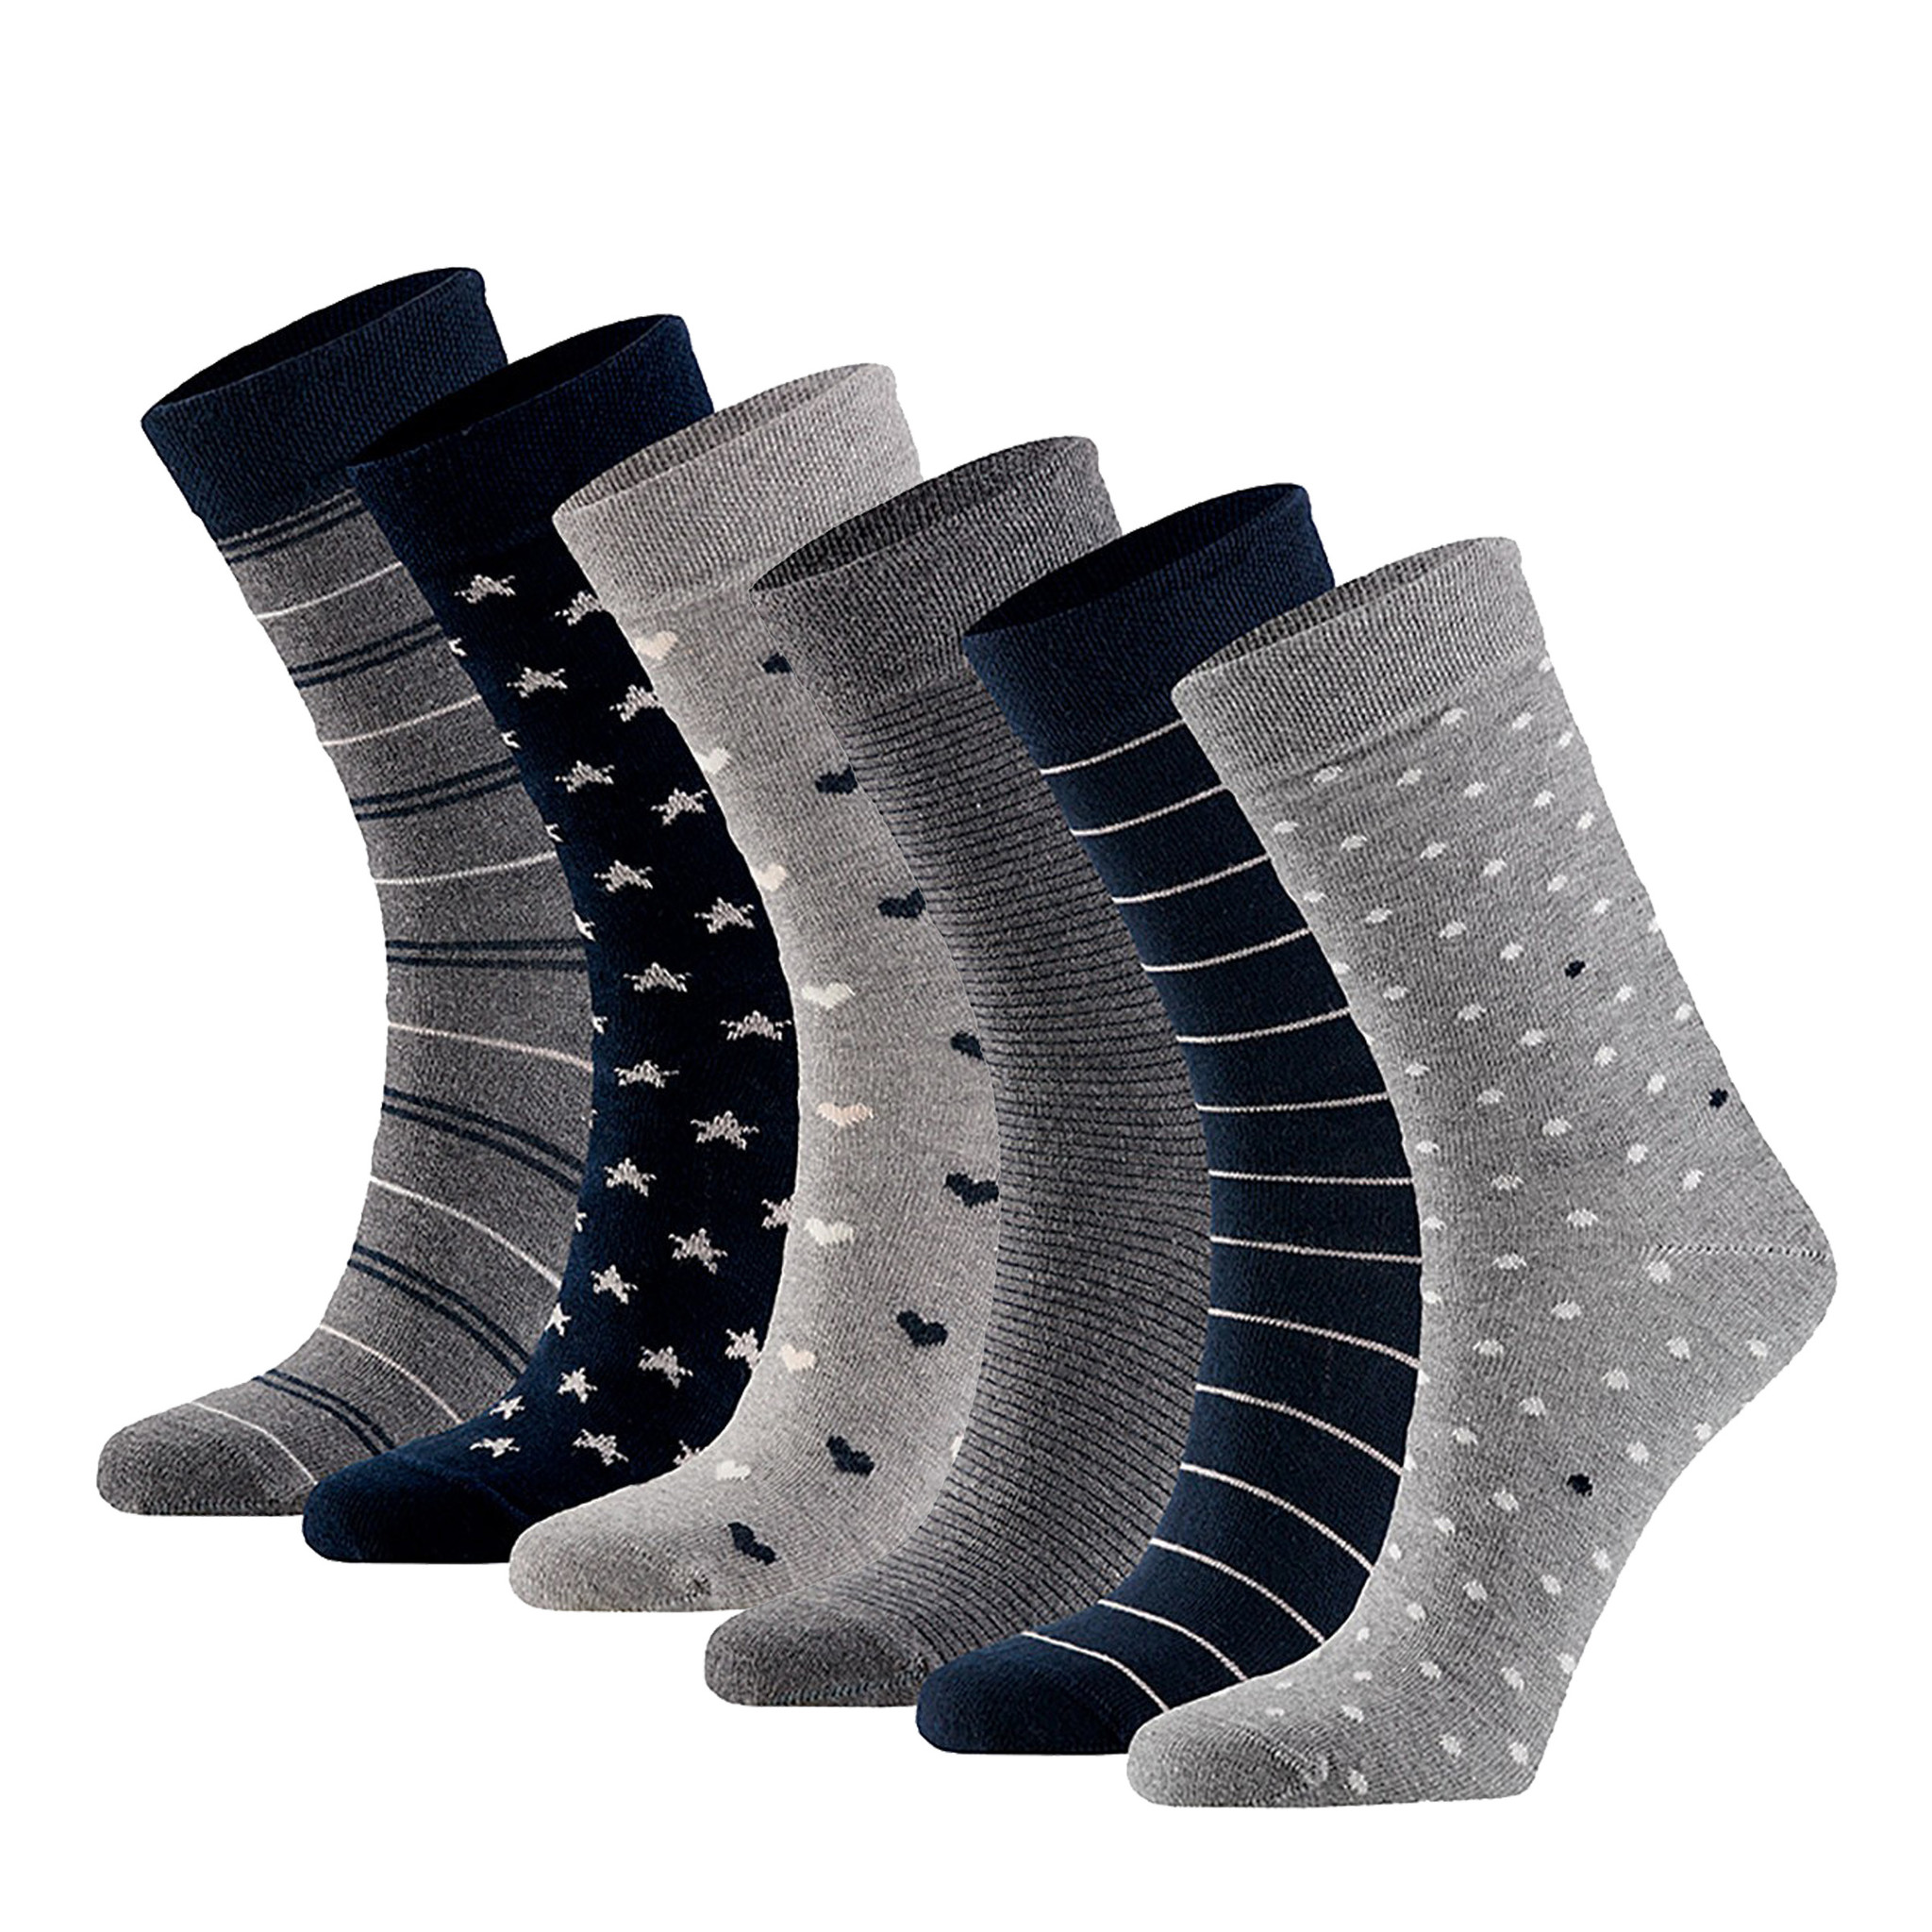 Afbeelding van Apollo Dames sokken hartjes gestreept sterren print bio katoen 6-pack grijs / navy blauw